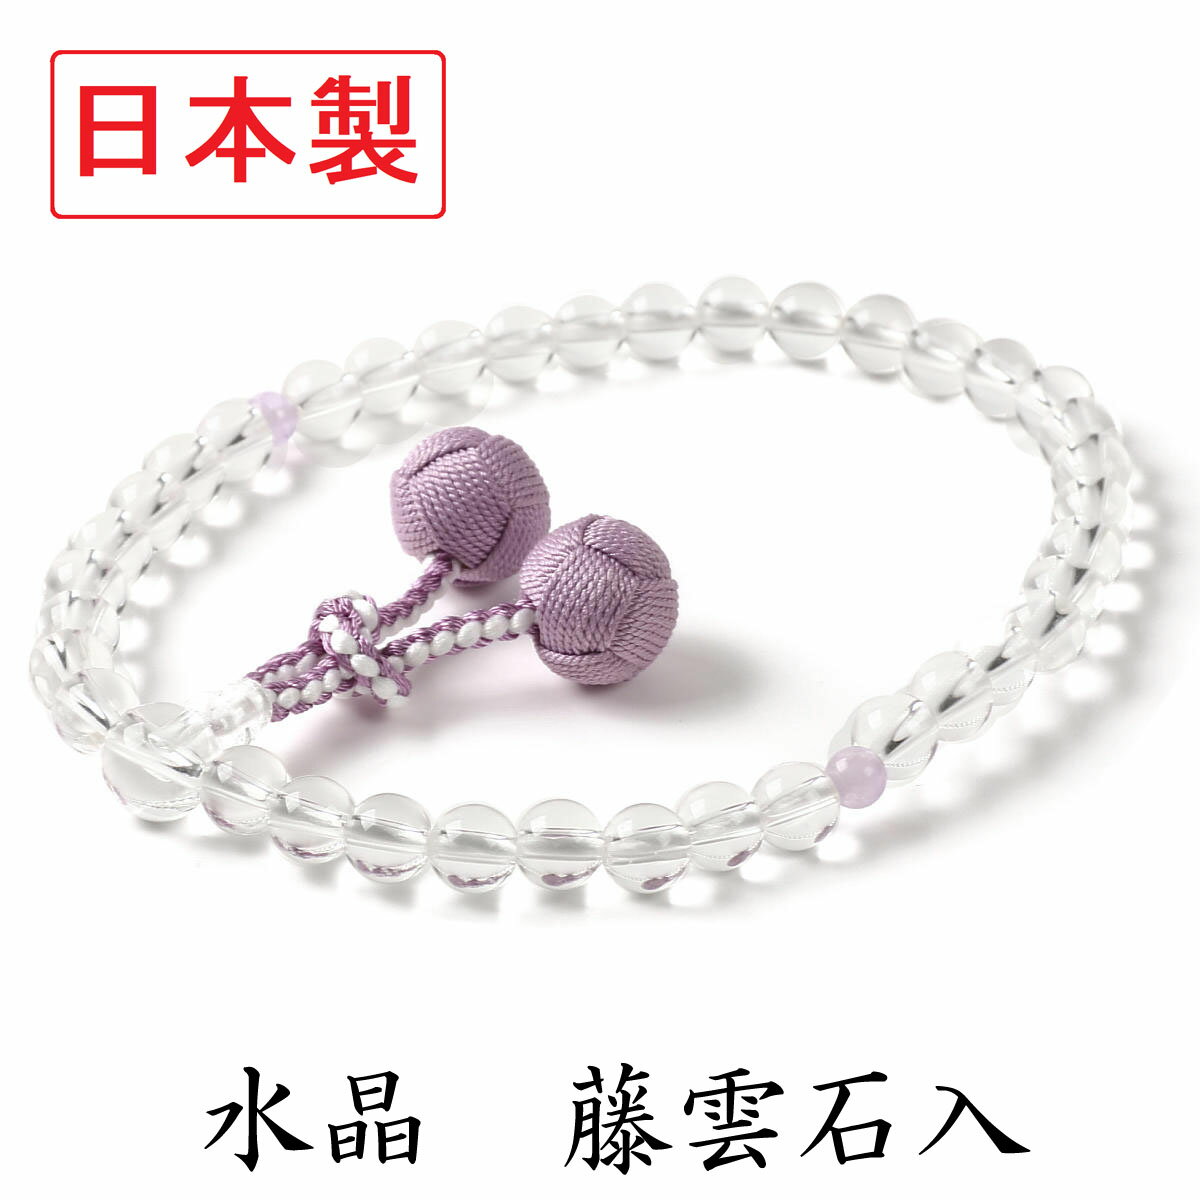 日本製 数珠 女性用 本水晶 藤雲石 